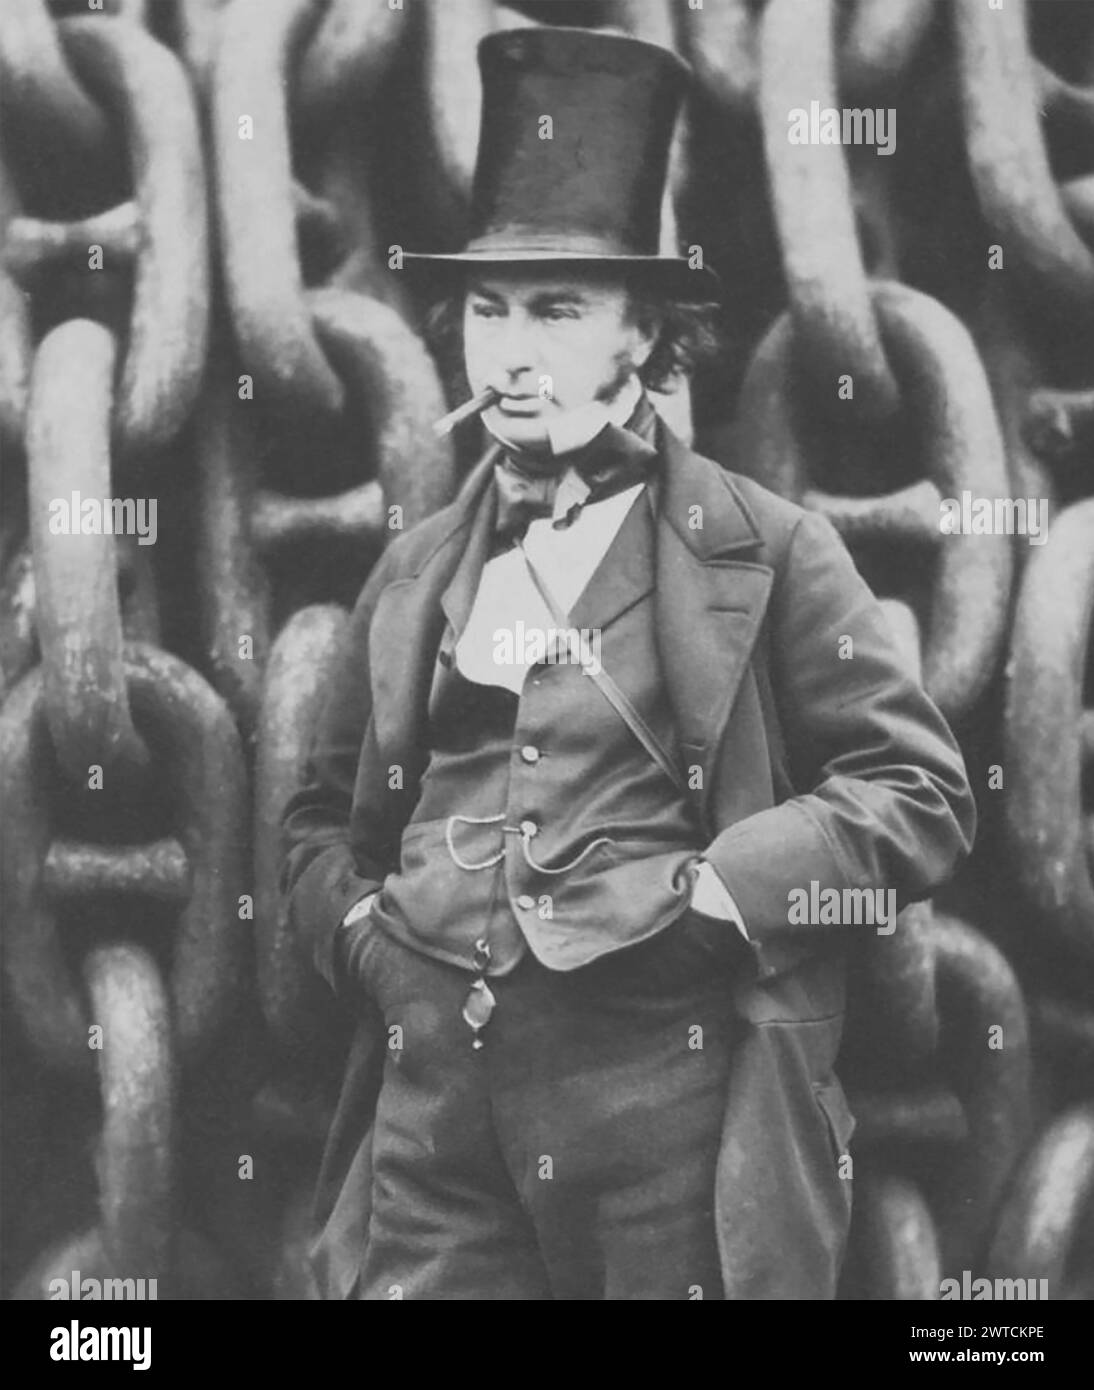 ISAMBARD KINGDOM BRUNEL (1806-1859) ingénieur civil britannique et mathématicien détail de la photographie devant les chaînes de lancement de la SS Grande-Bretagne par Robert Howlett en 1857 Banque D'Images